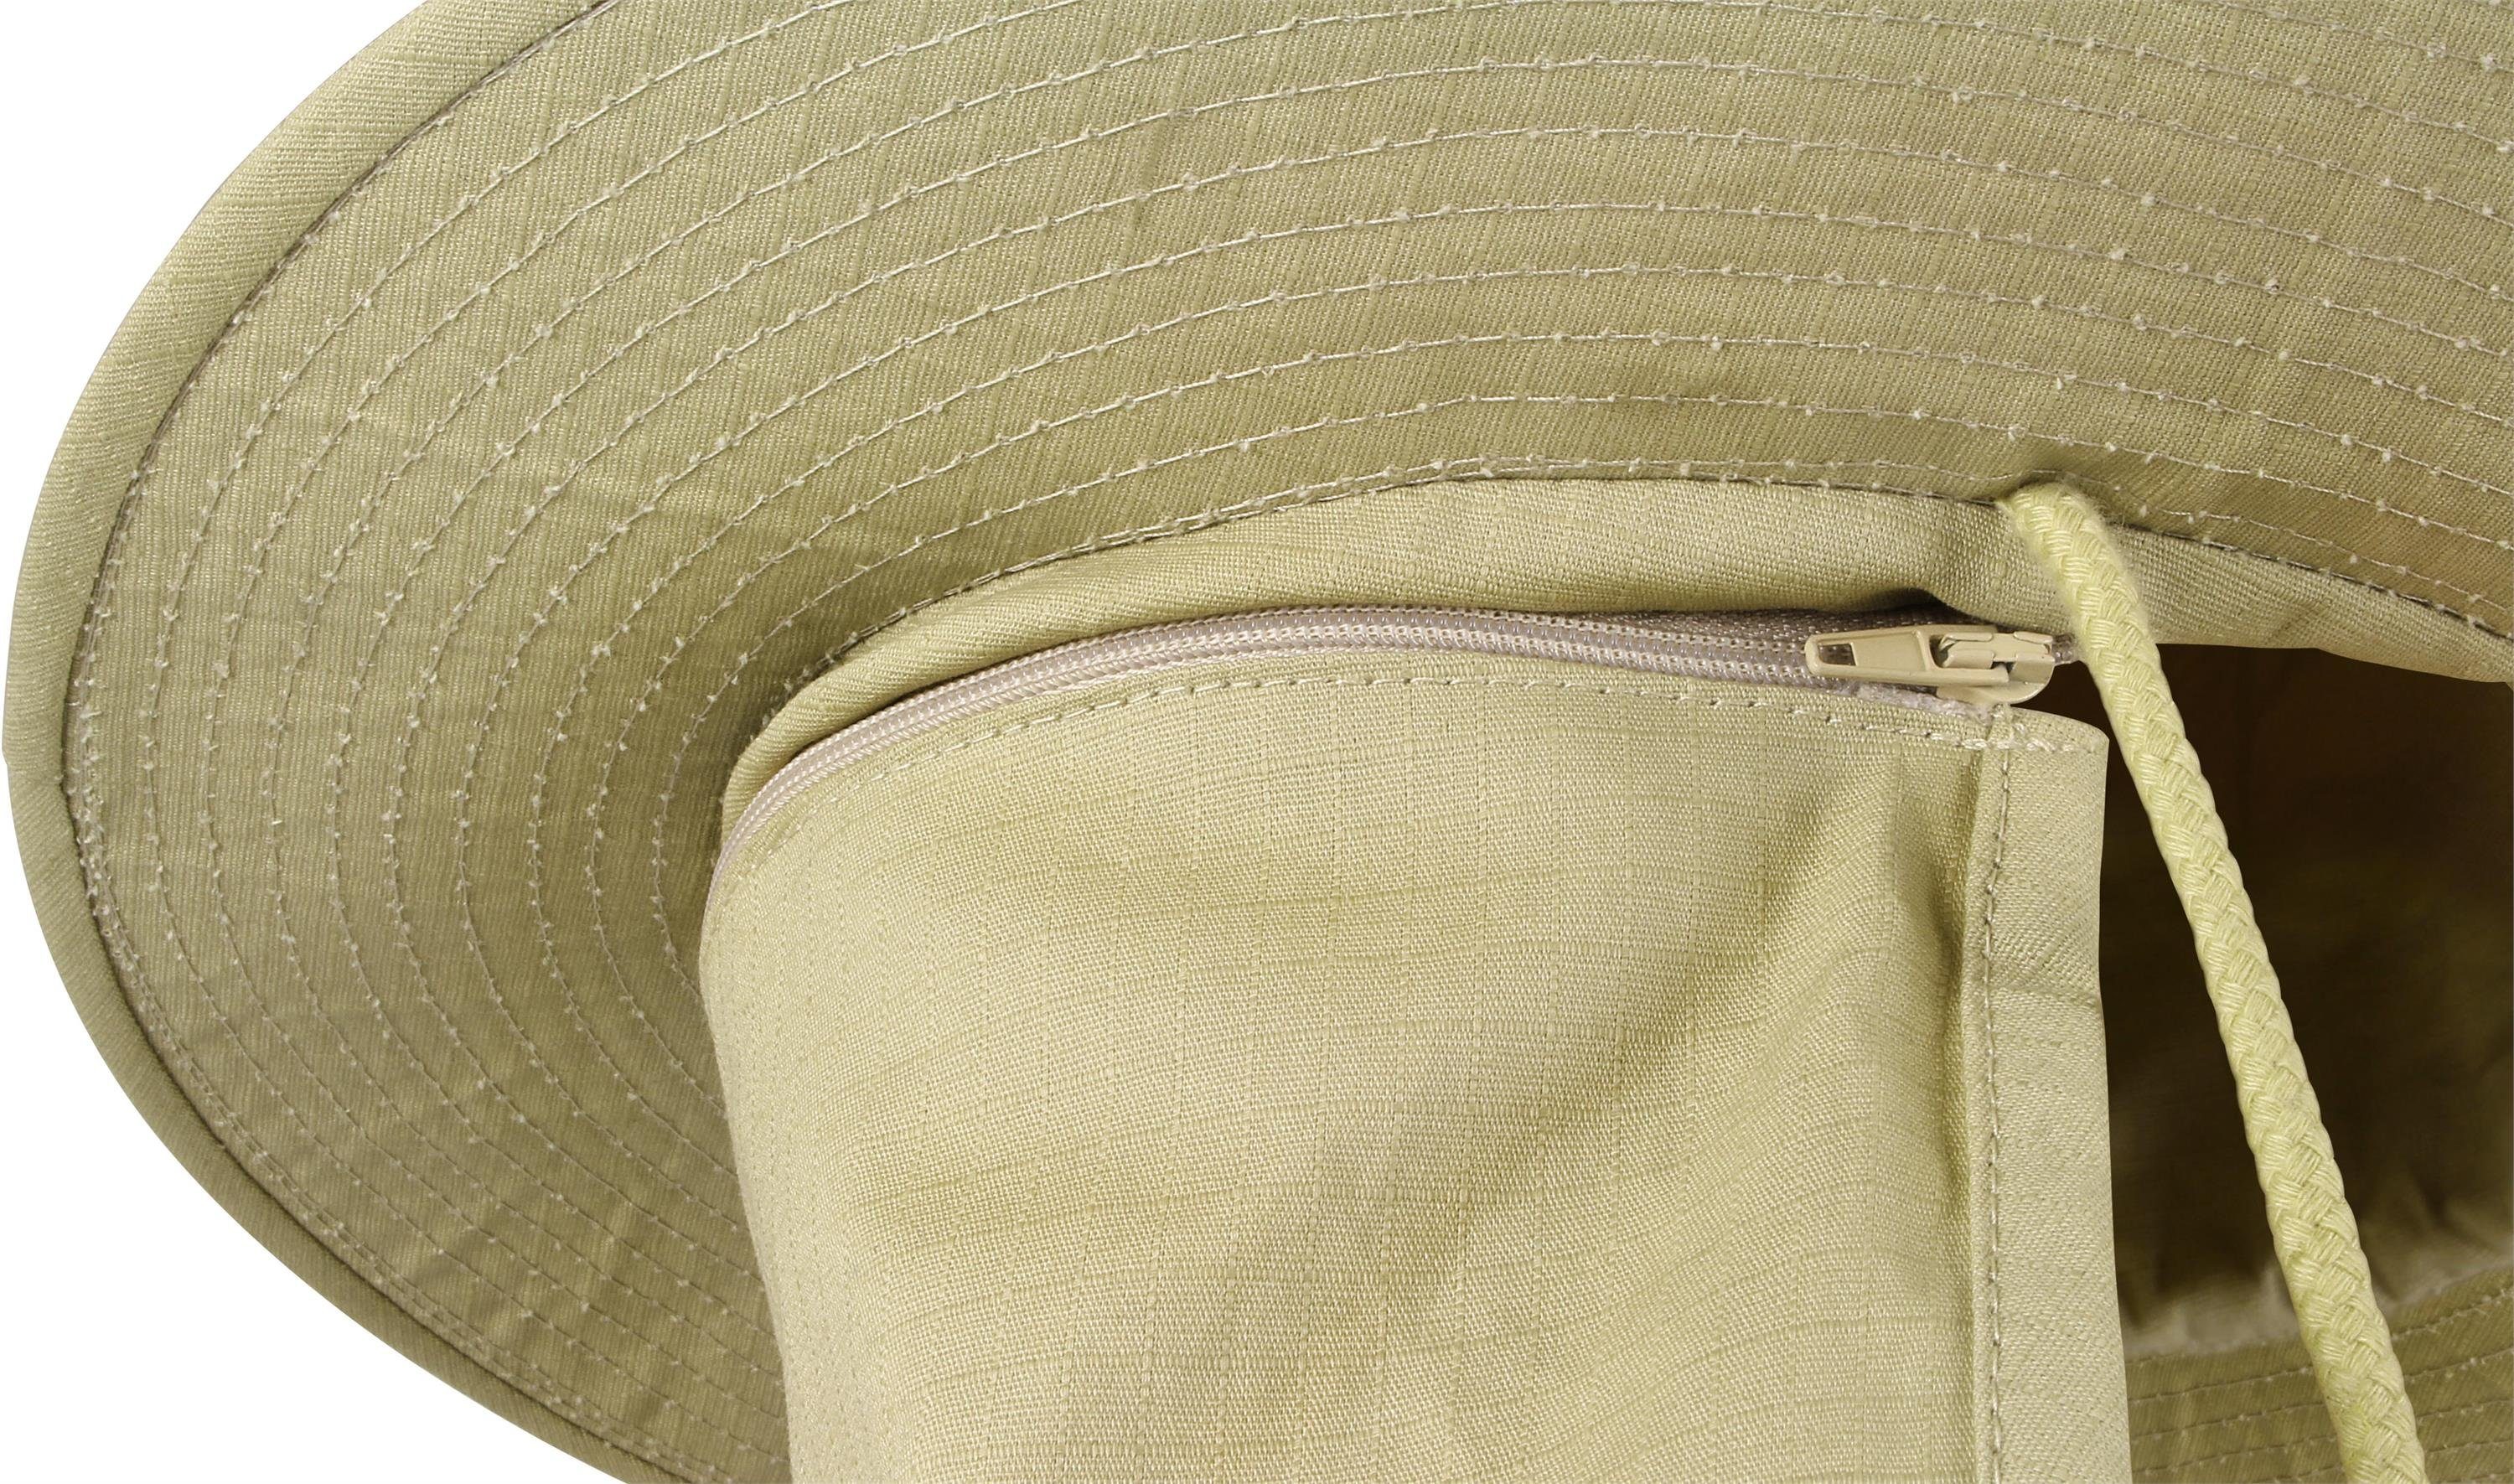 normani Nackenschutz Sonnenhut Sonnenhut Hat mit Khaki Outdoorhut Outdoorhut Boonie Junglescout Sommermütze abnehmbarem